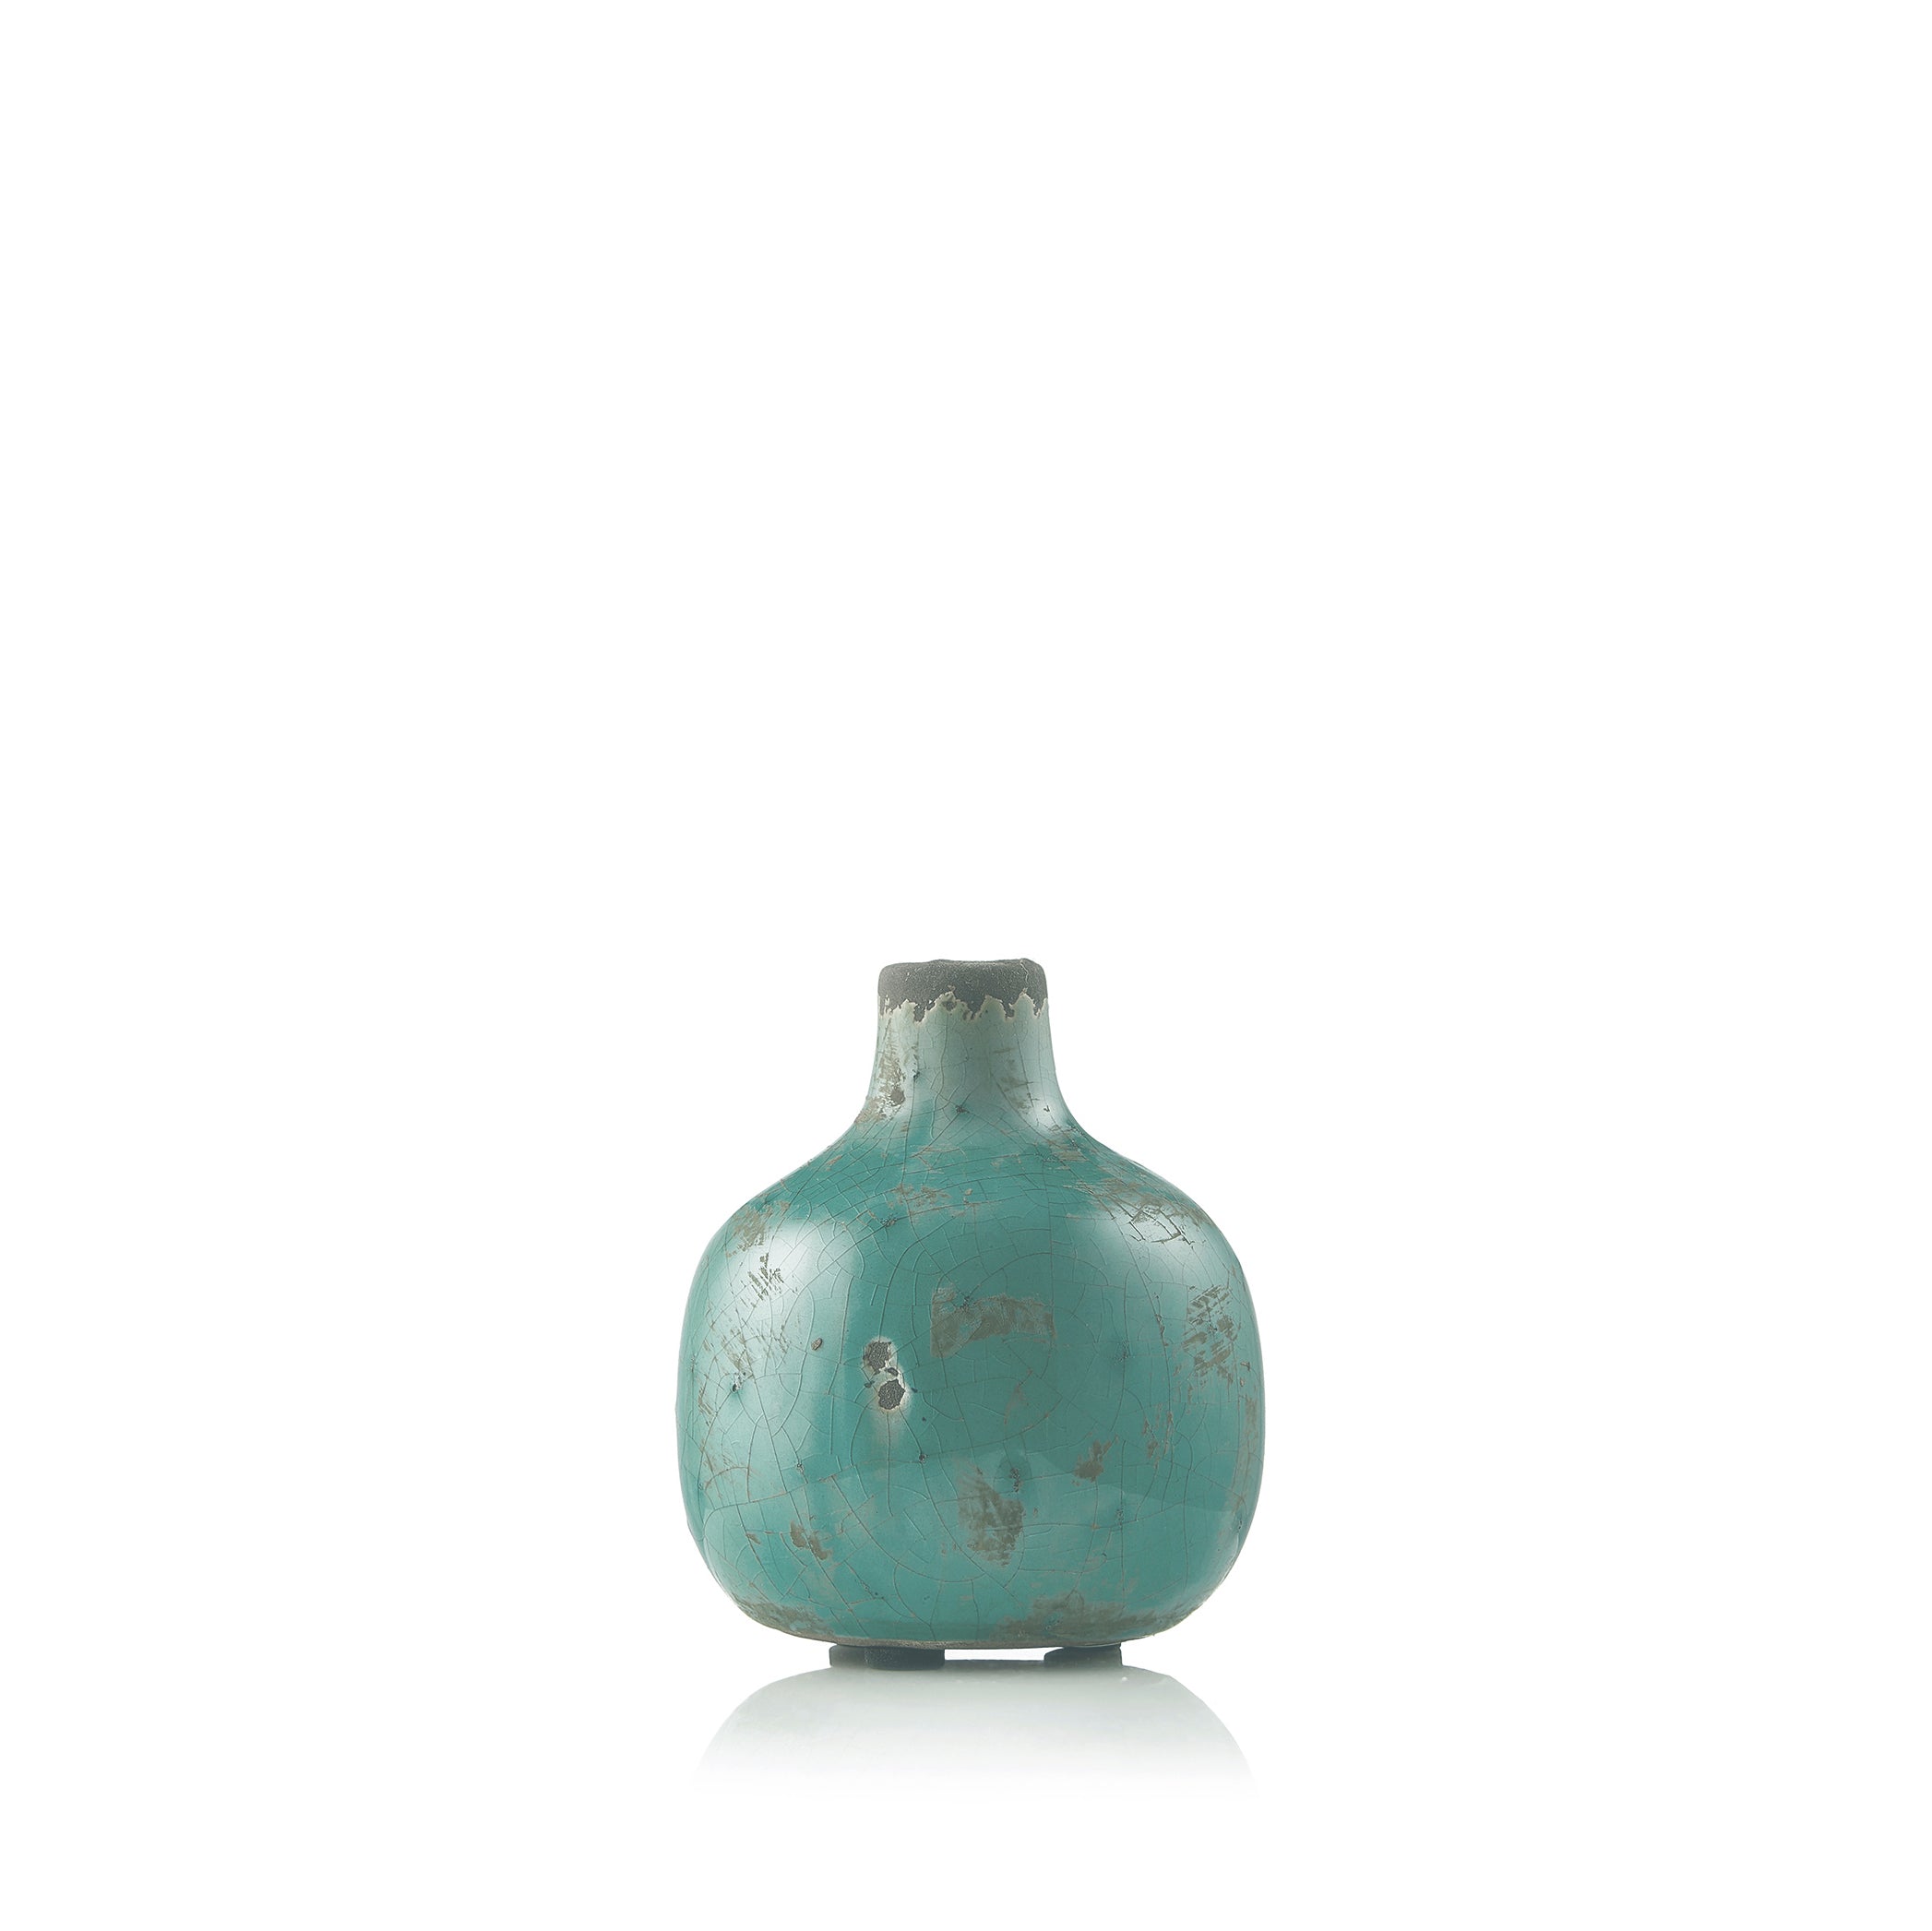 Ceramic Crackled Vase in Aqua Green